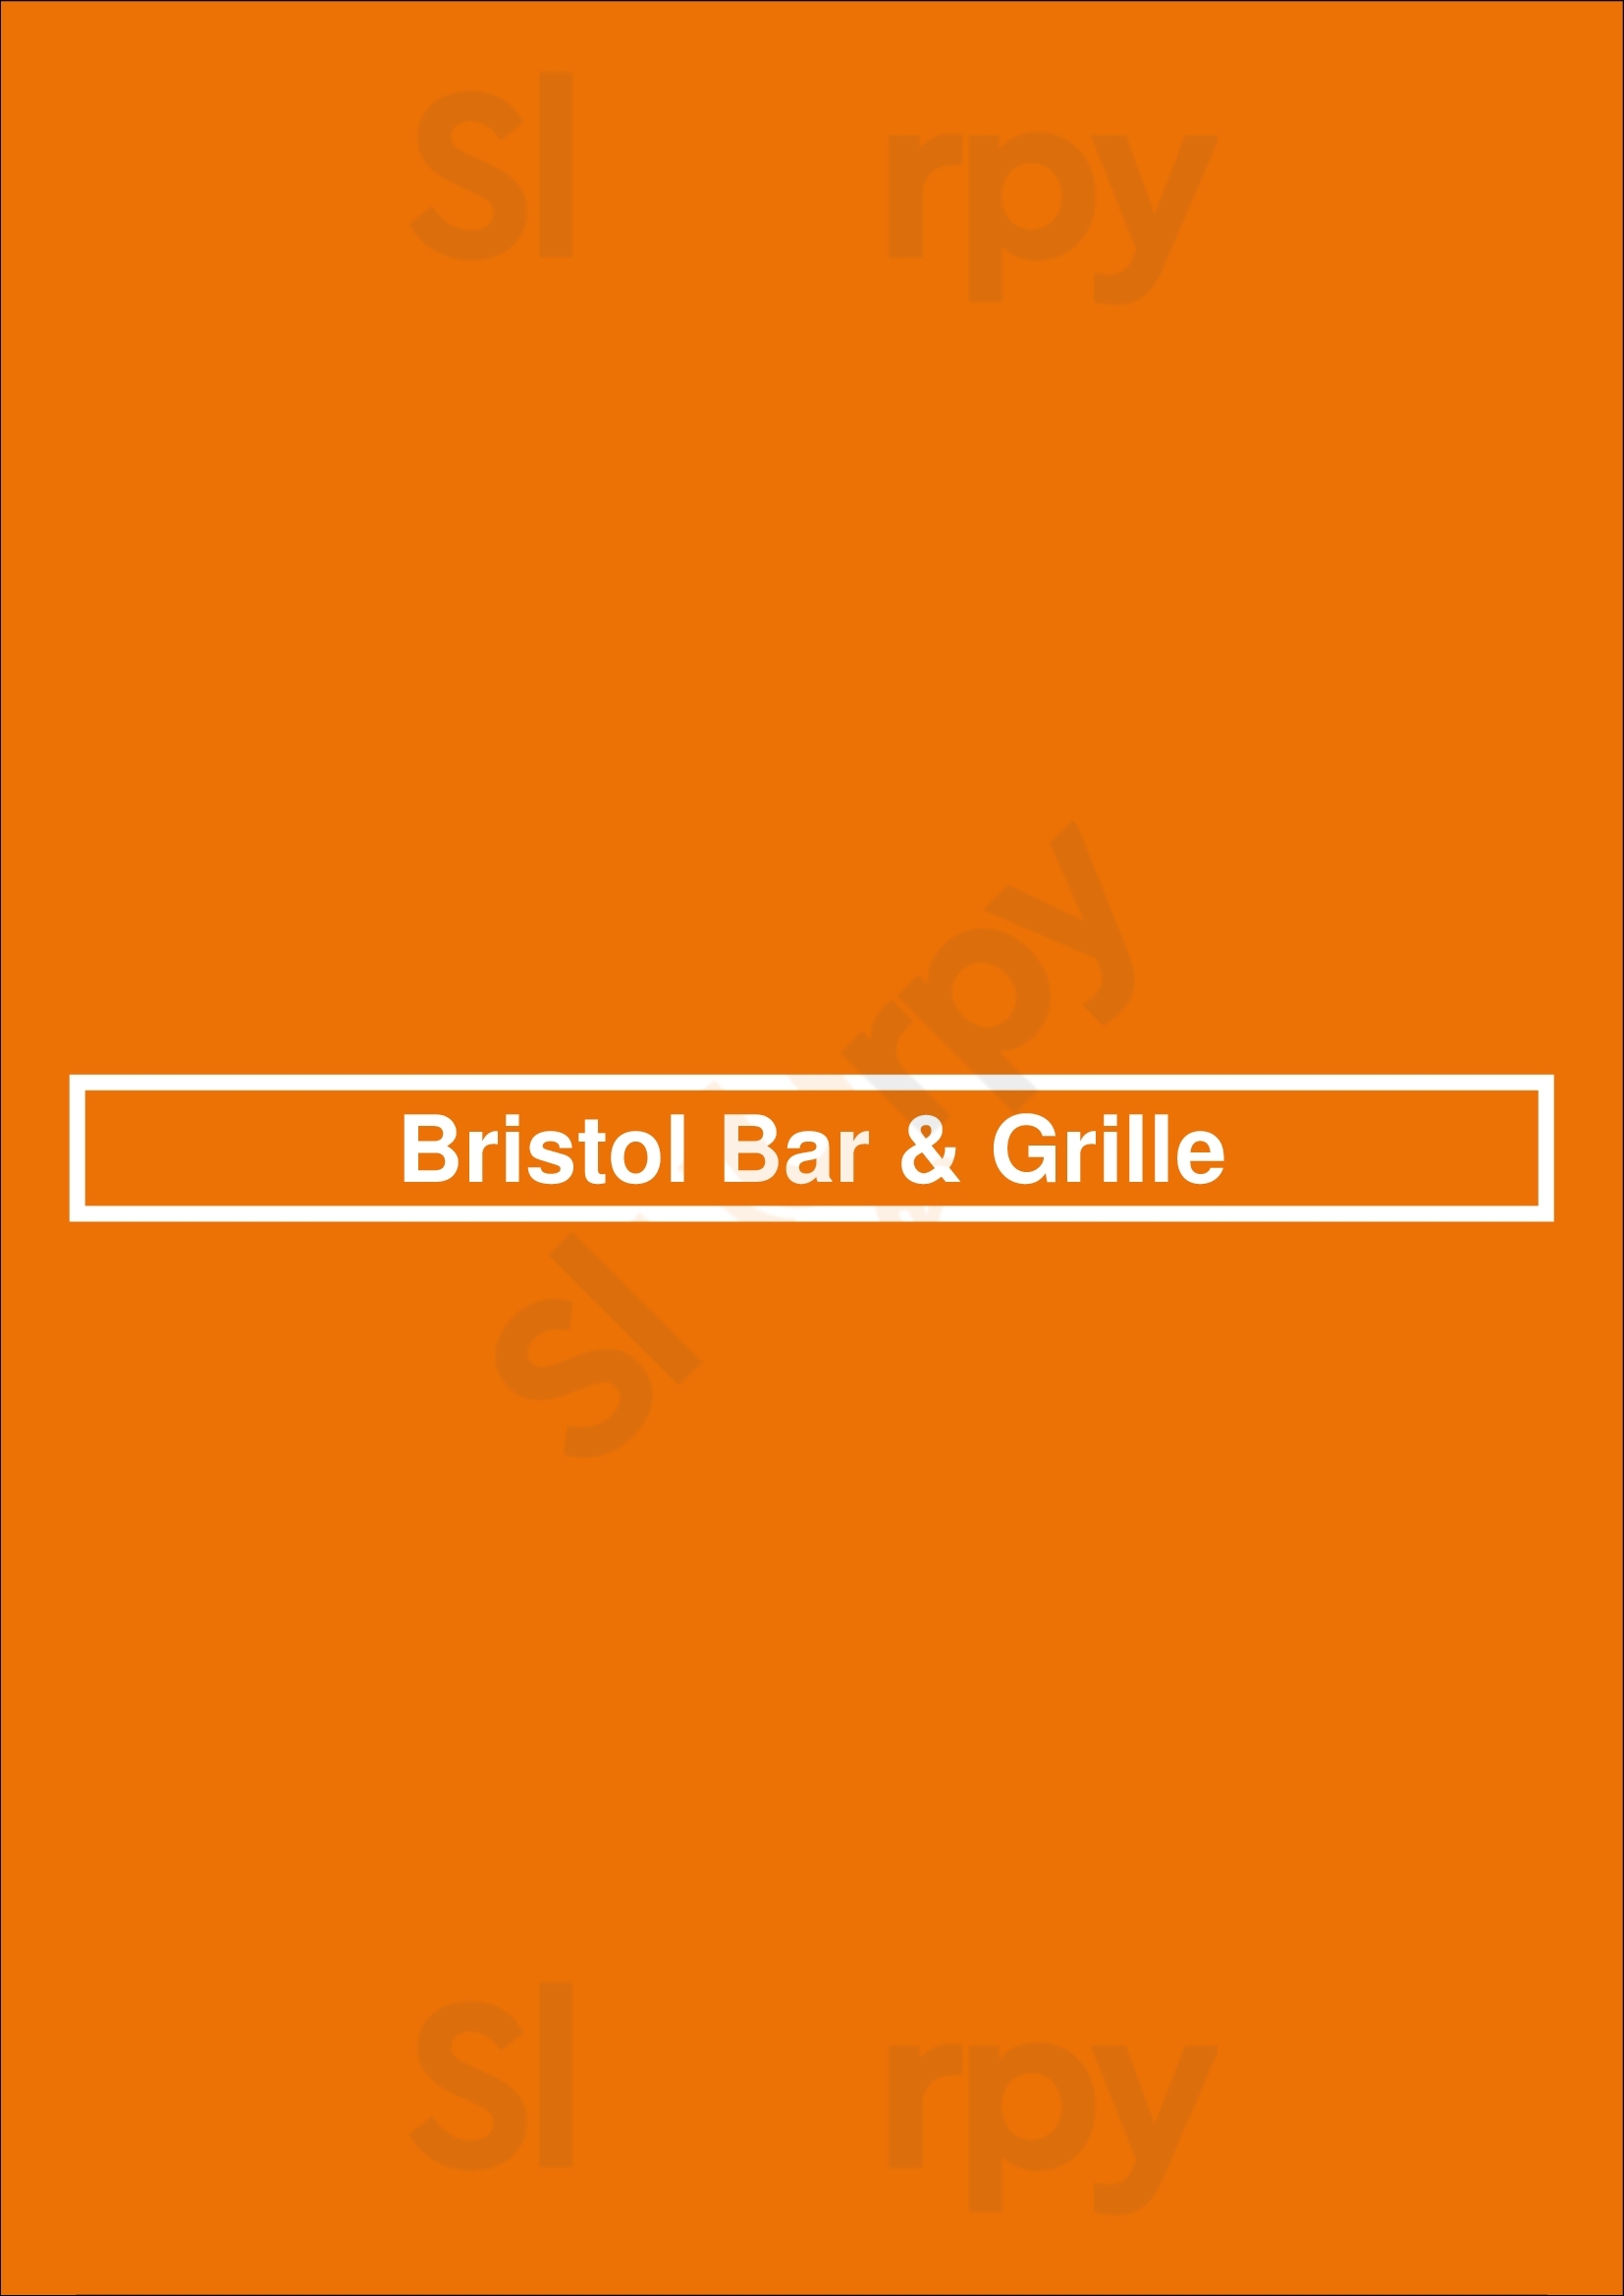 Bristol Bar & Grille Louisville Menu - 1